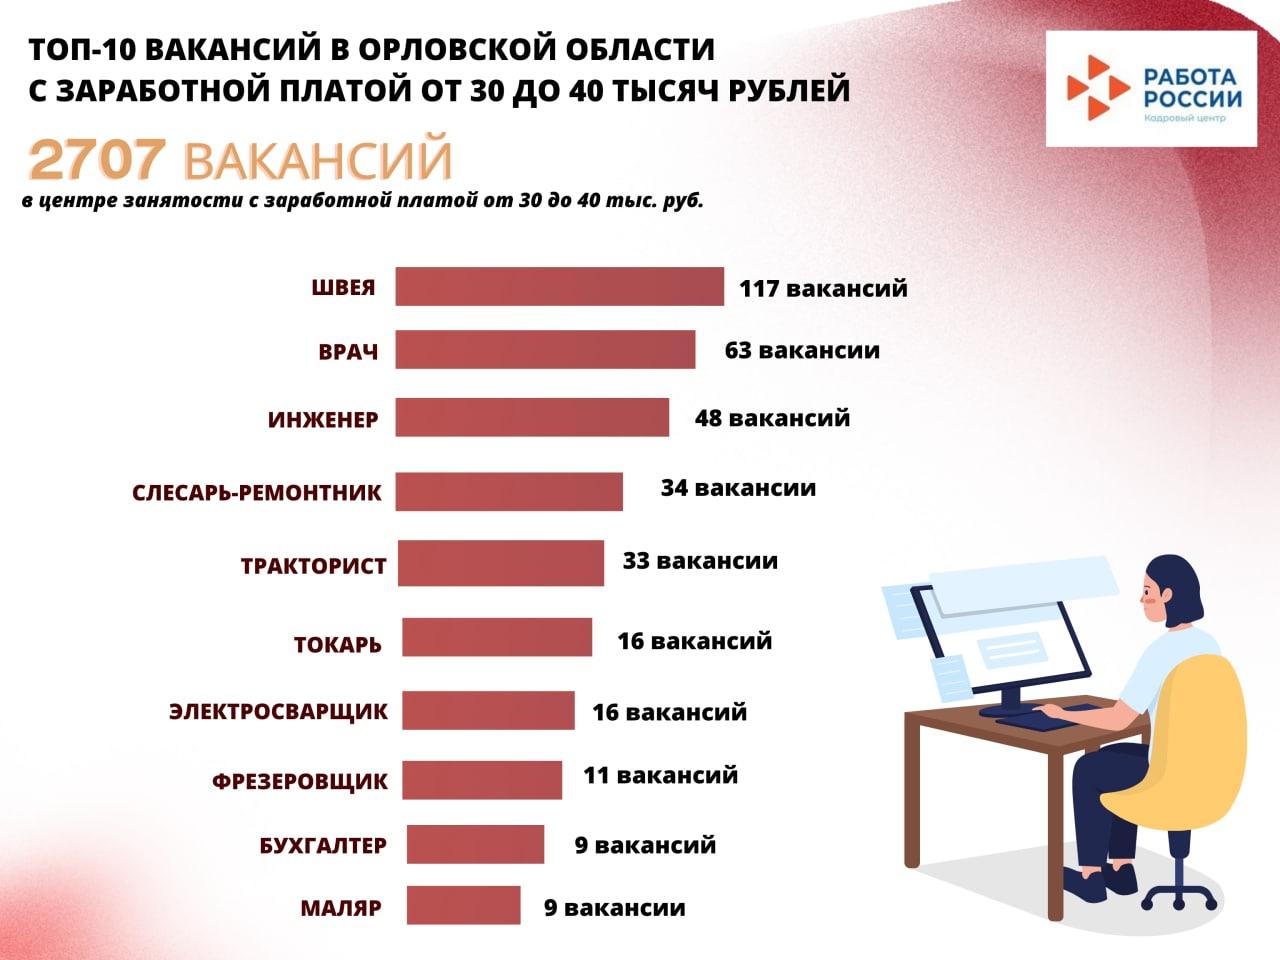 Банк вакансий Орловской области предлагает 2707 вакансий с заработной платой от 30 до 40 тысяч рублей